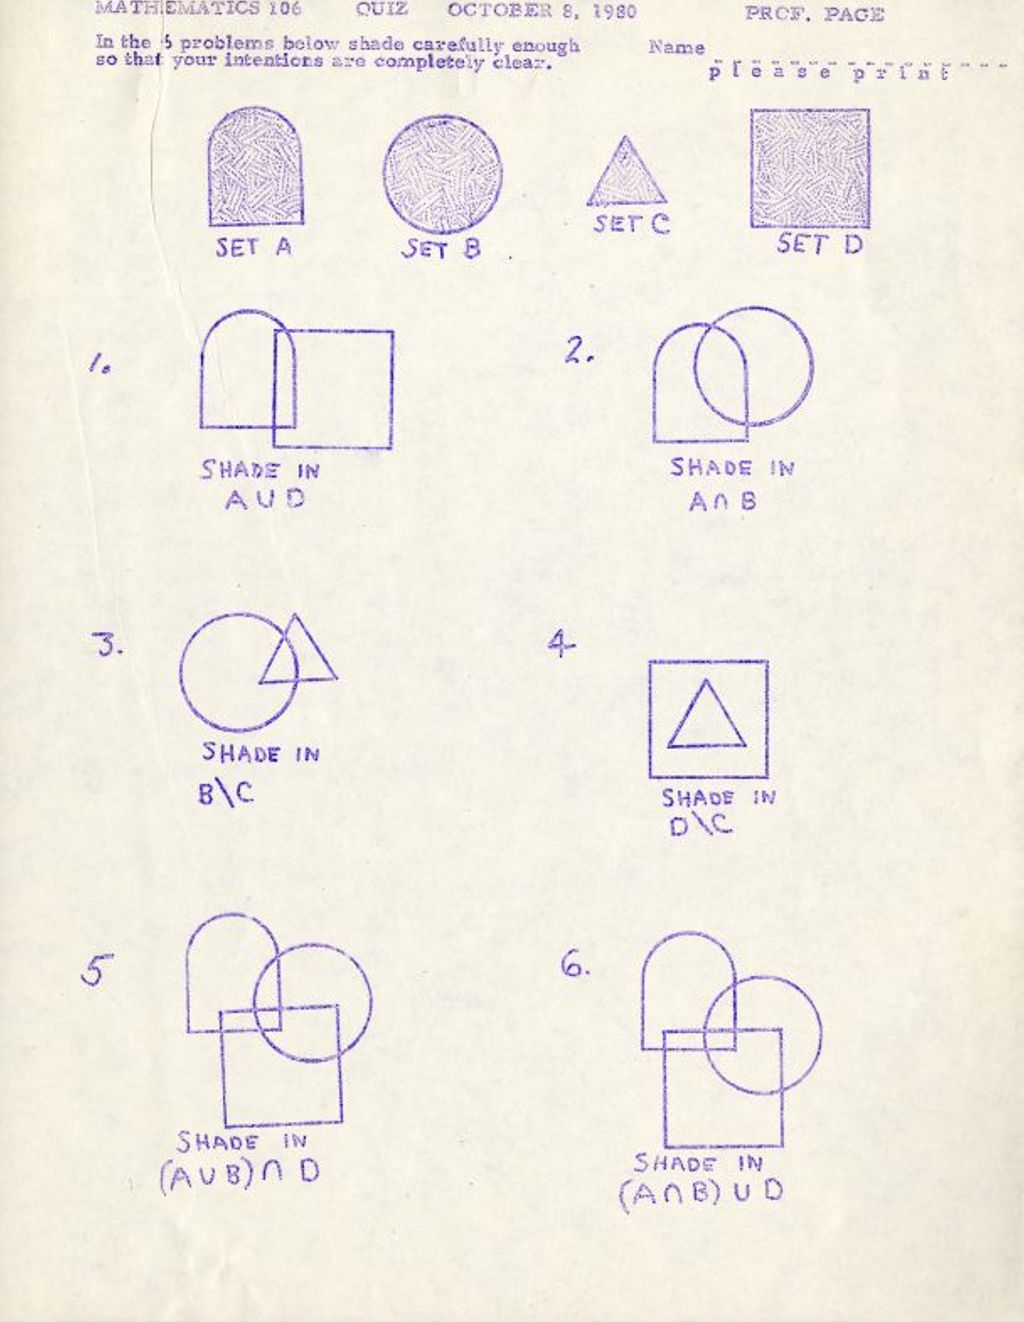 Math 106 Quiz (October 1980) set